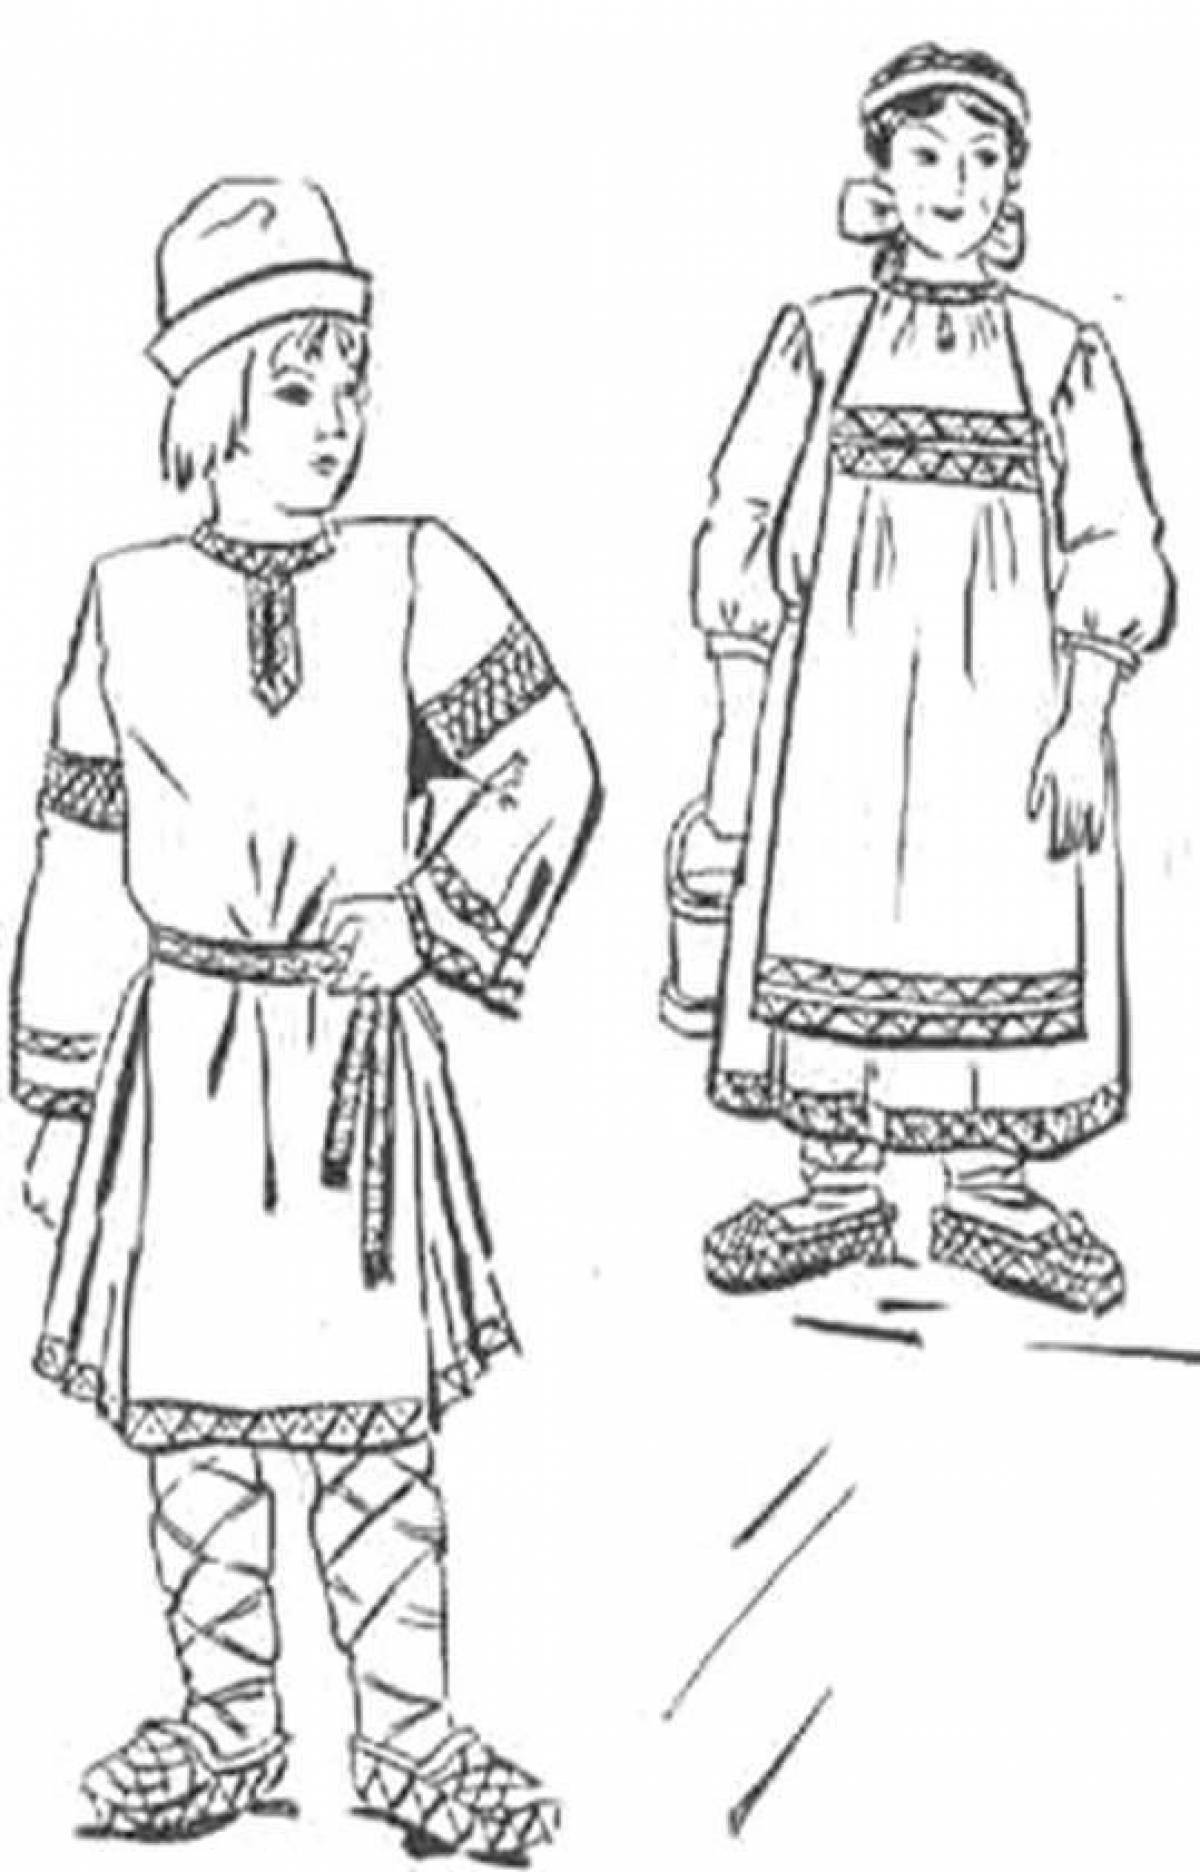 Коми-Пермяцкий национальный костюм раскраска